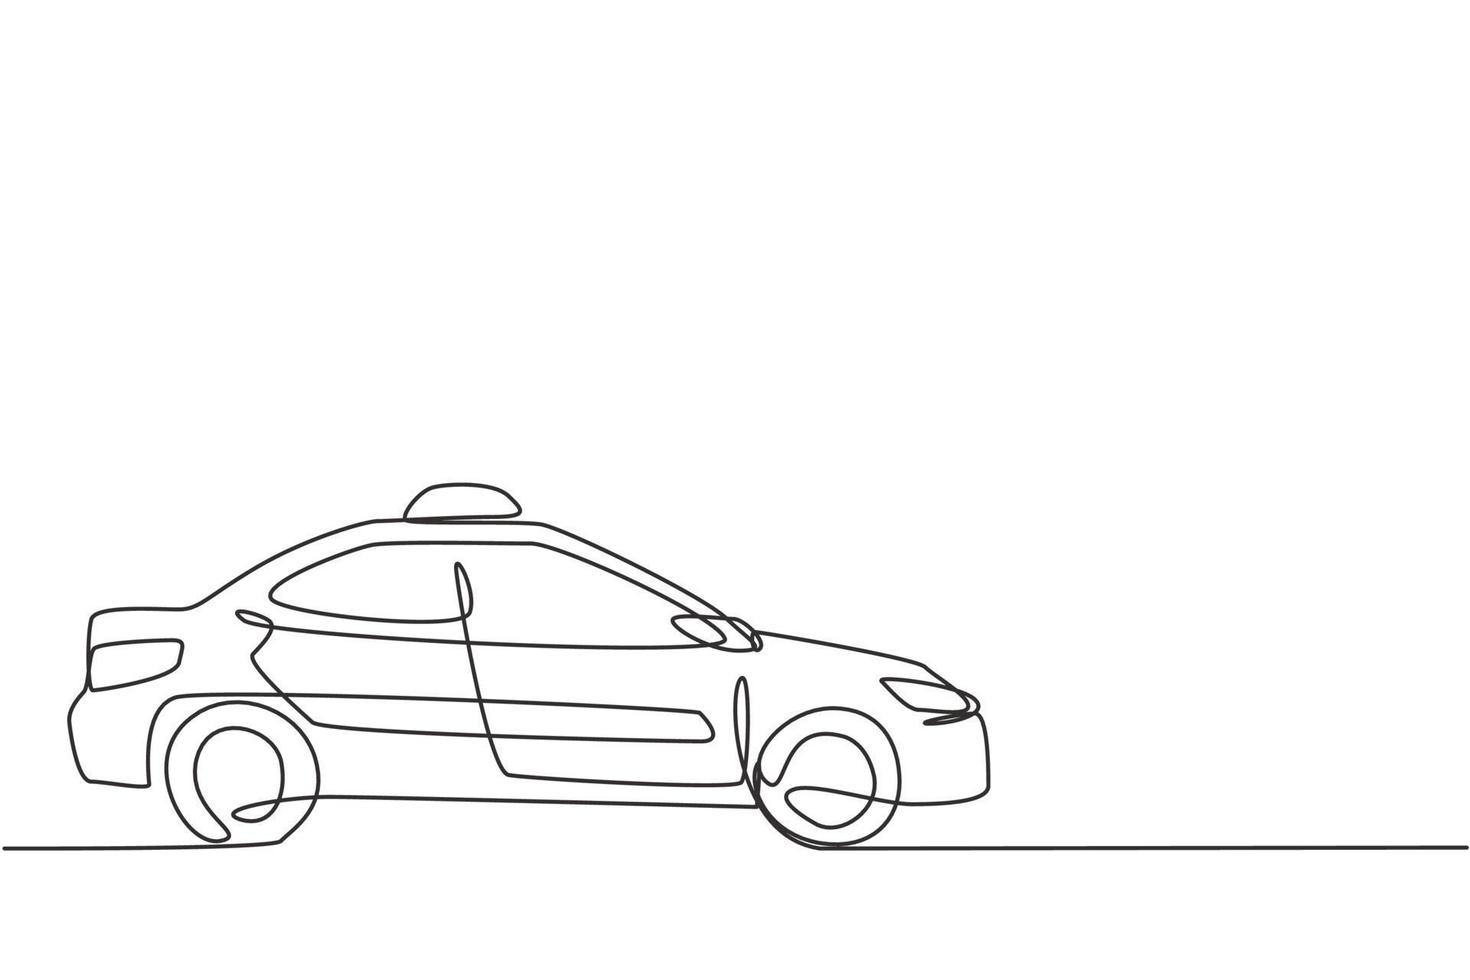 Um único desenho de linha do carro de táxi moderno mais novo usa um medidor, GPS e pode ser encomendado online. avanços tecnológicos em transporte. linha contínua desenhar design gráfico ilustração vetorial. vetor